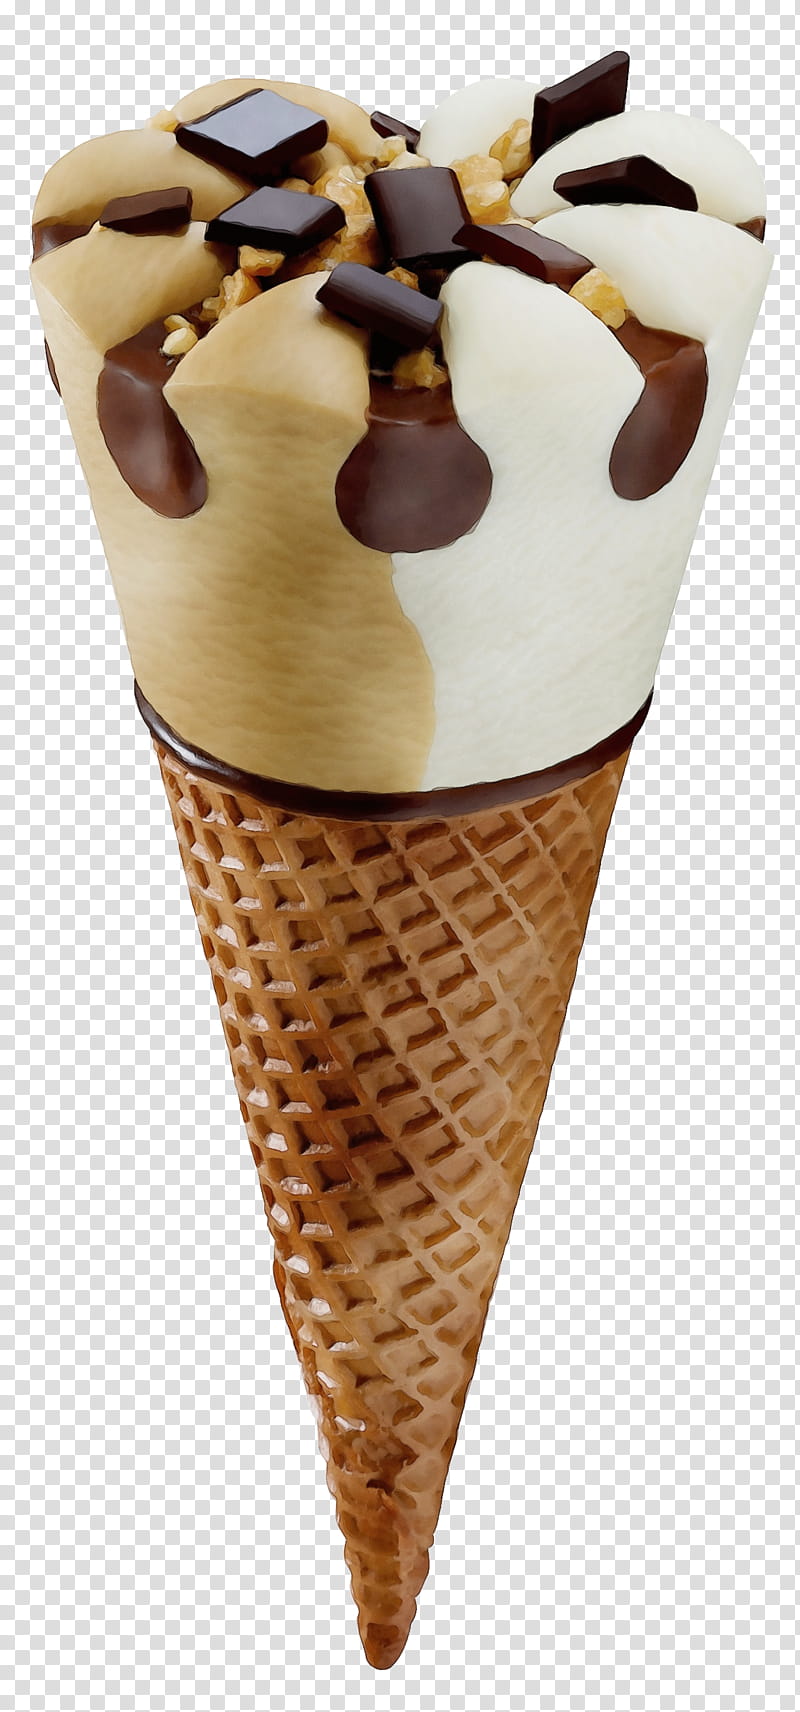 Ice Cream Cone, Ice Cream Cones, Butterscotch, Sundae, Dessert, Chocolate Ice Cream, Ice Cream Bar, Vanilla Ice Cream transparent background PNG clipart